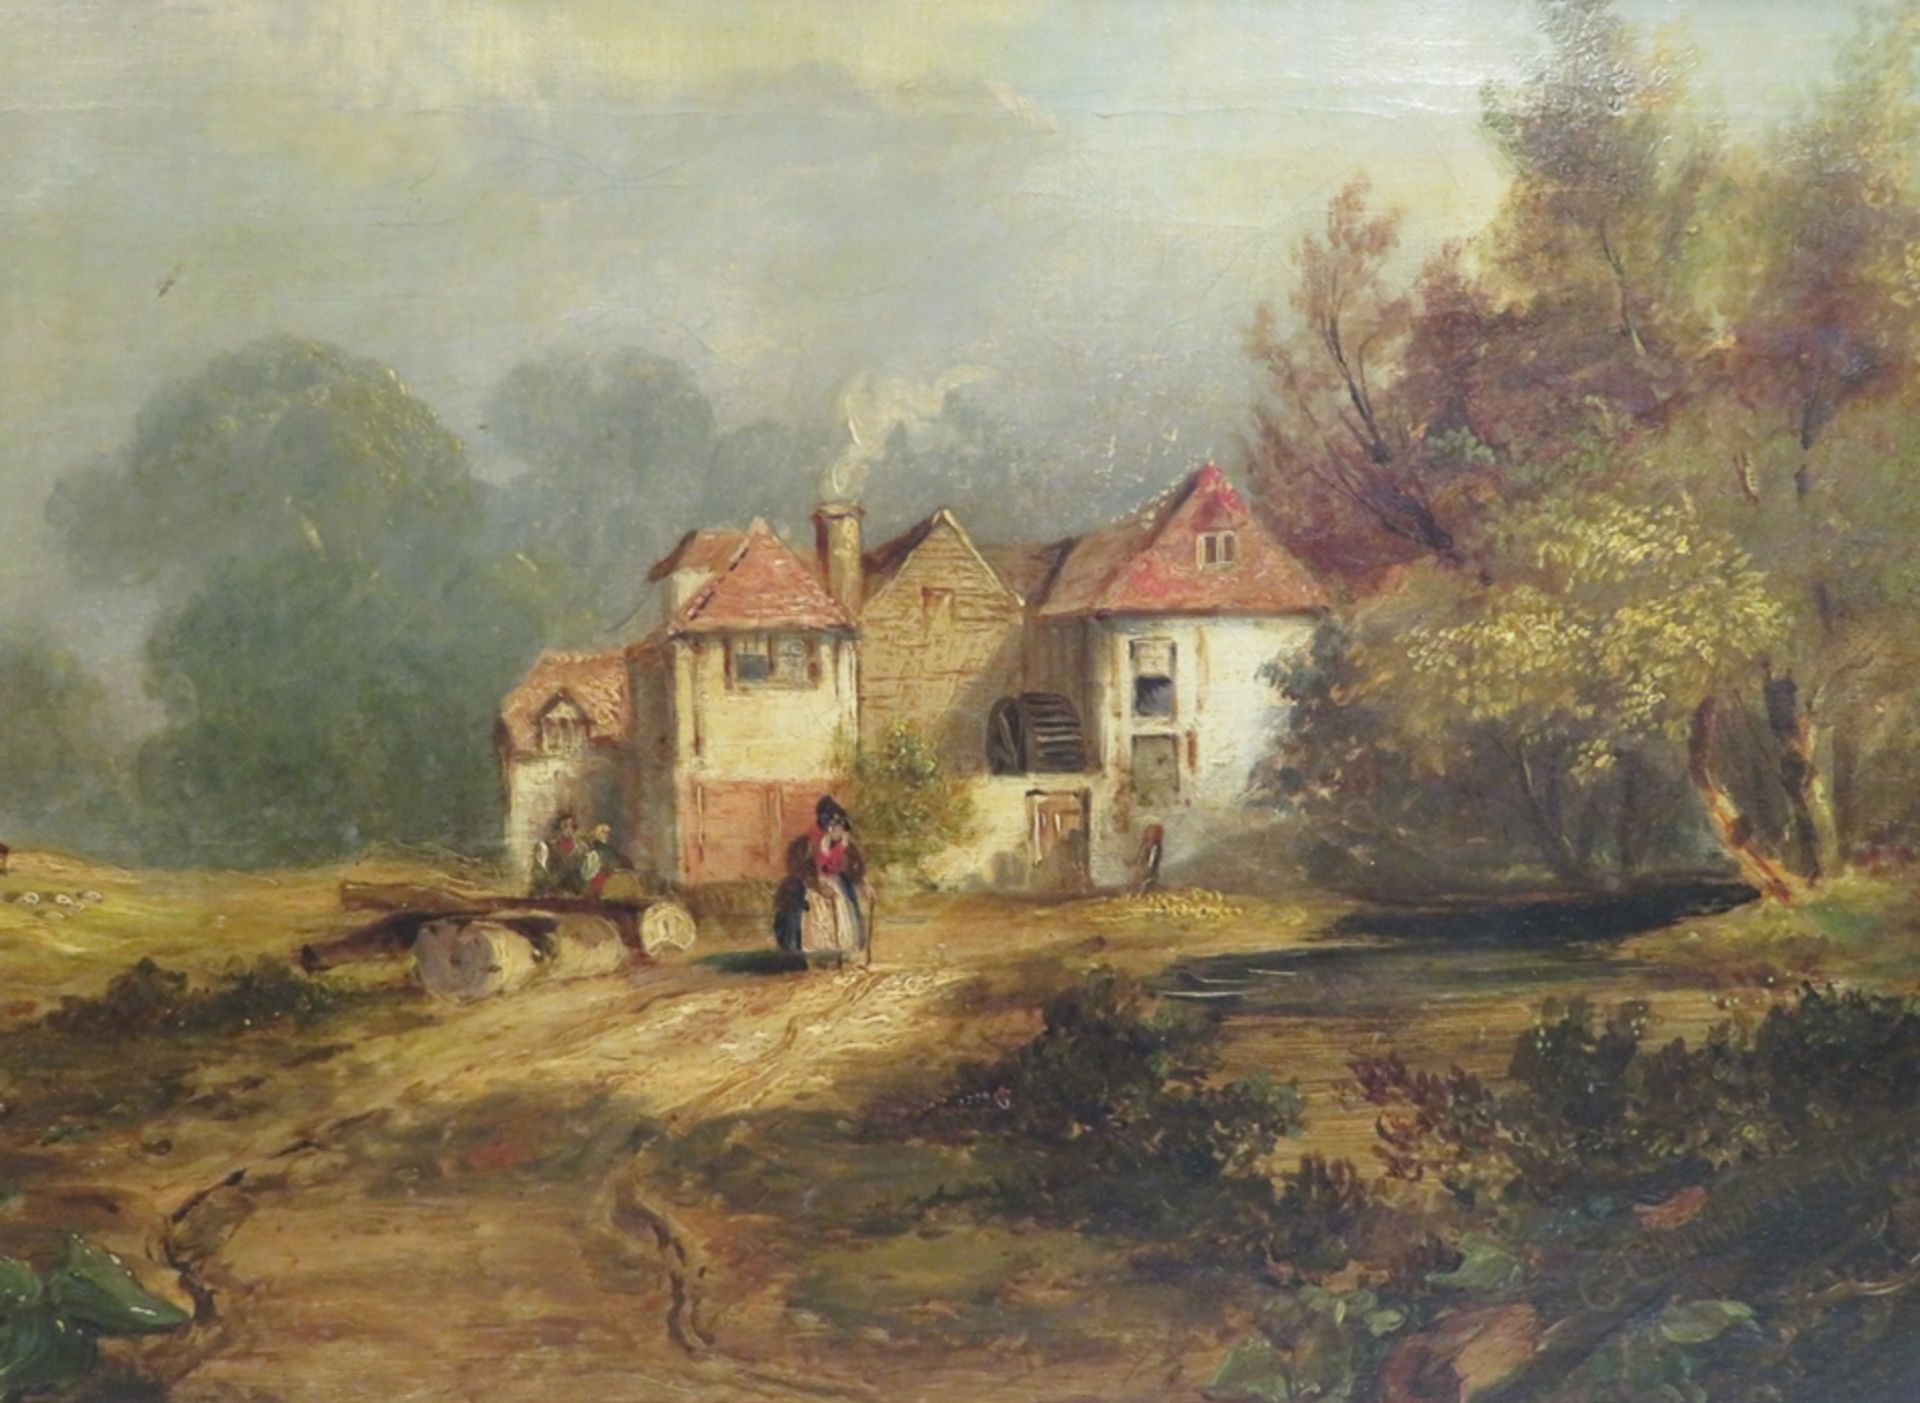 Chambers, George I, 1803 - 1840, englischer Marinemaler, als Landschaftsmaler tätig von 1827 - 28, 